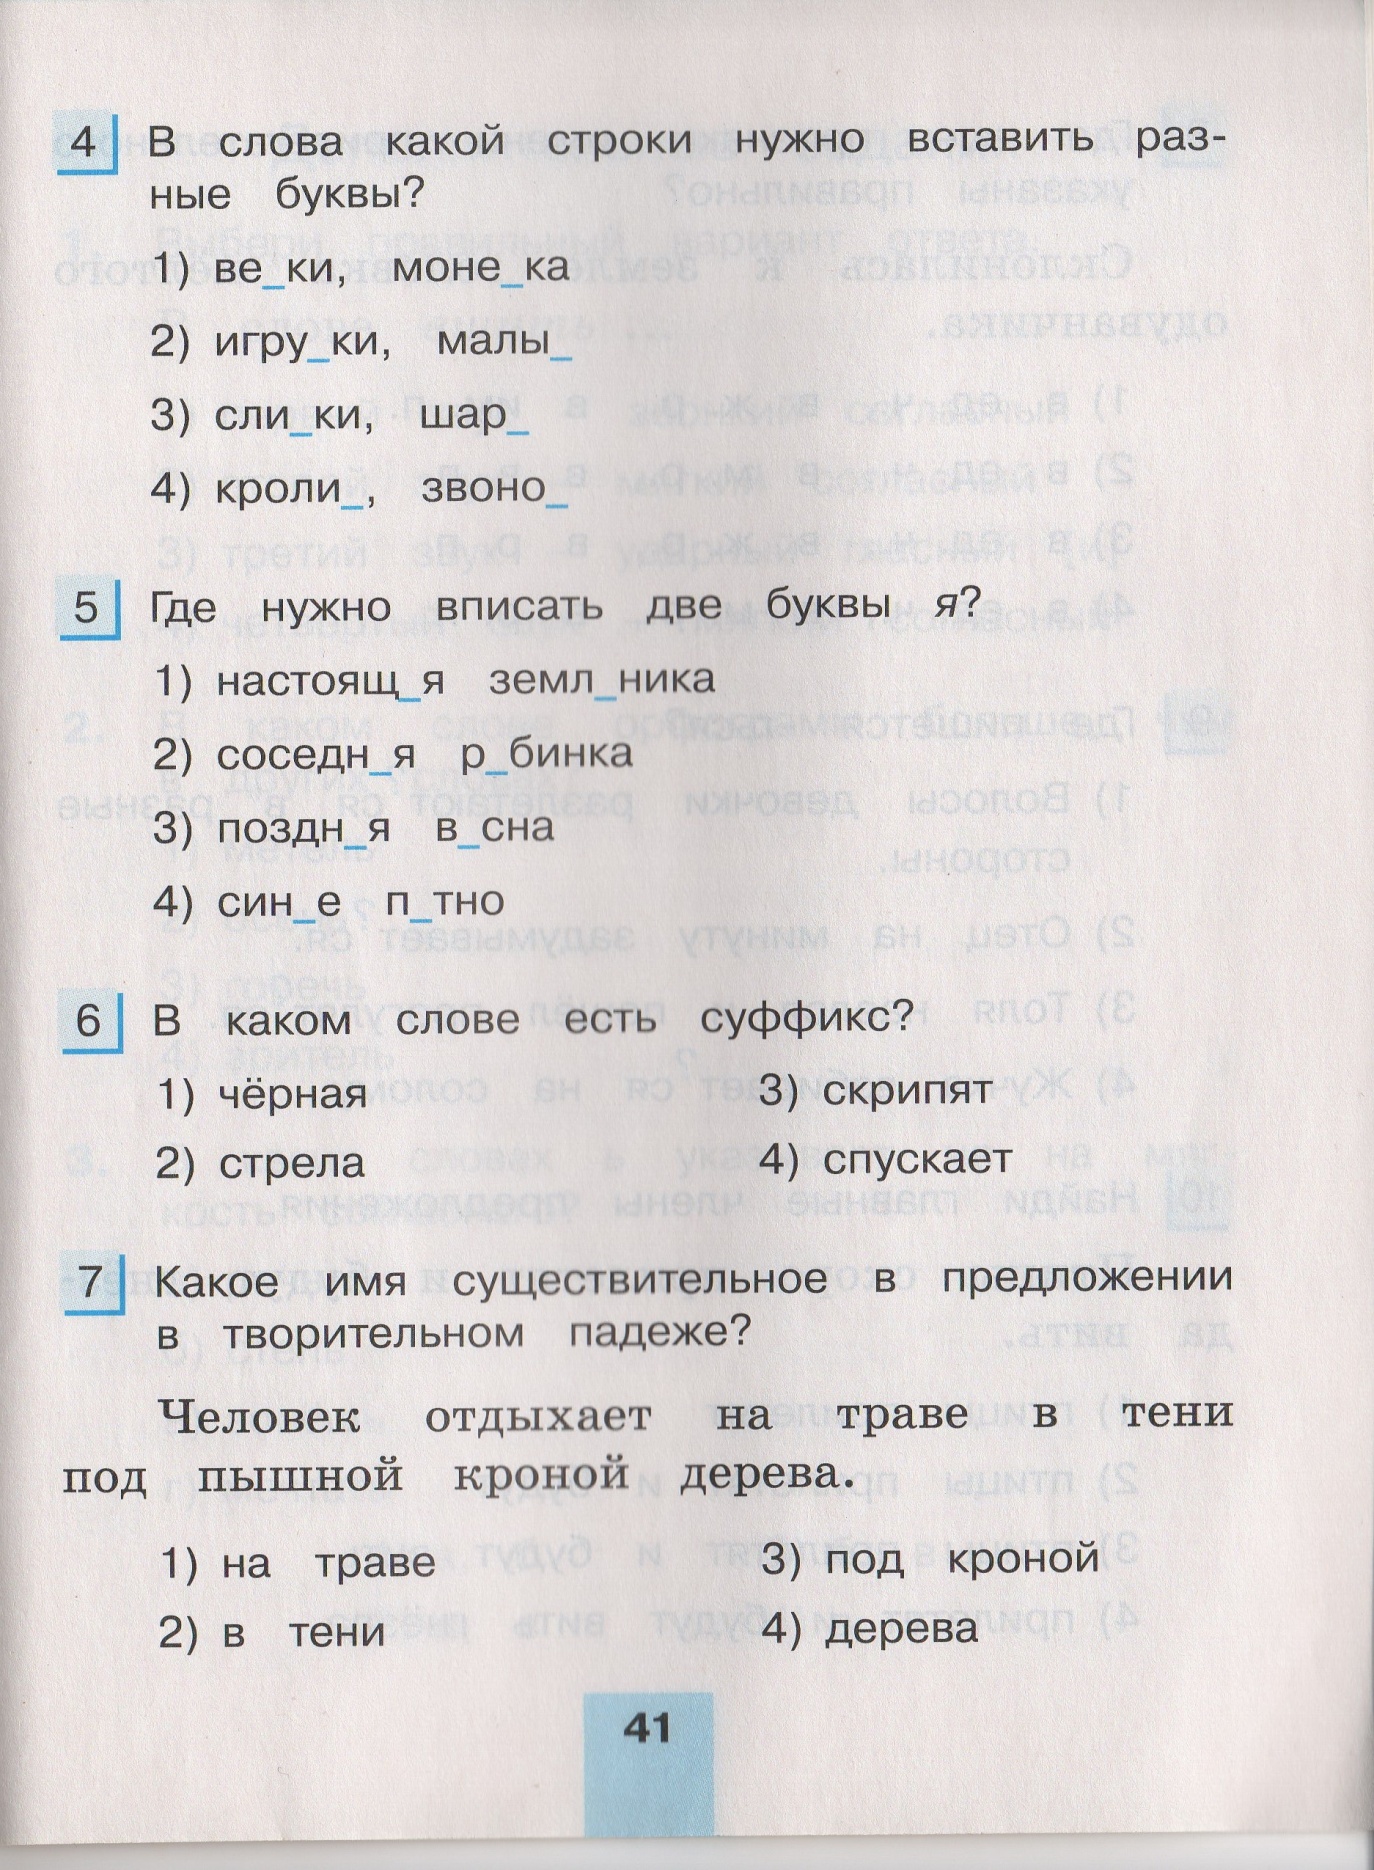 Контрольное списывание по русскому языку в начальных классах за 1 полугодие